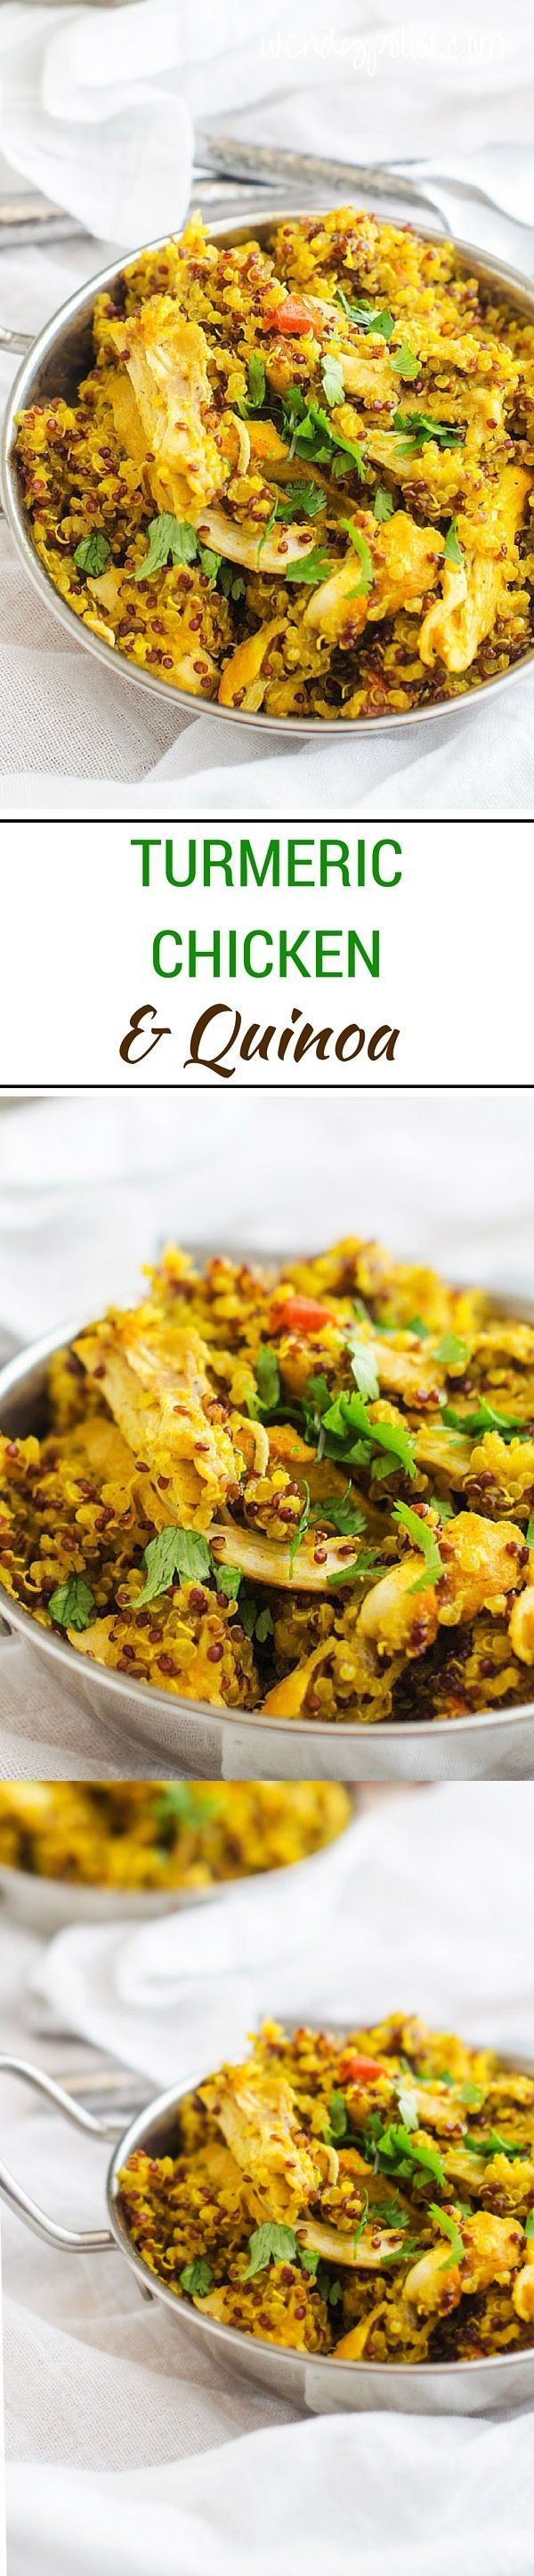 Turmeric Chicken & Quinoa